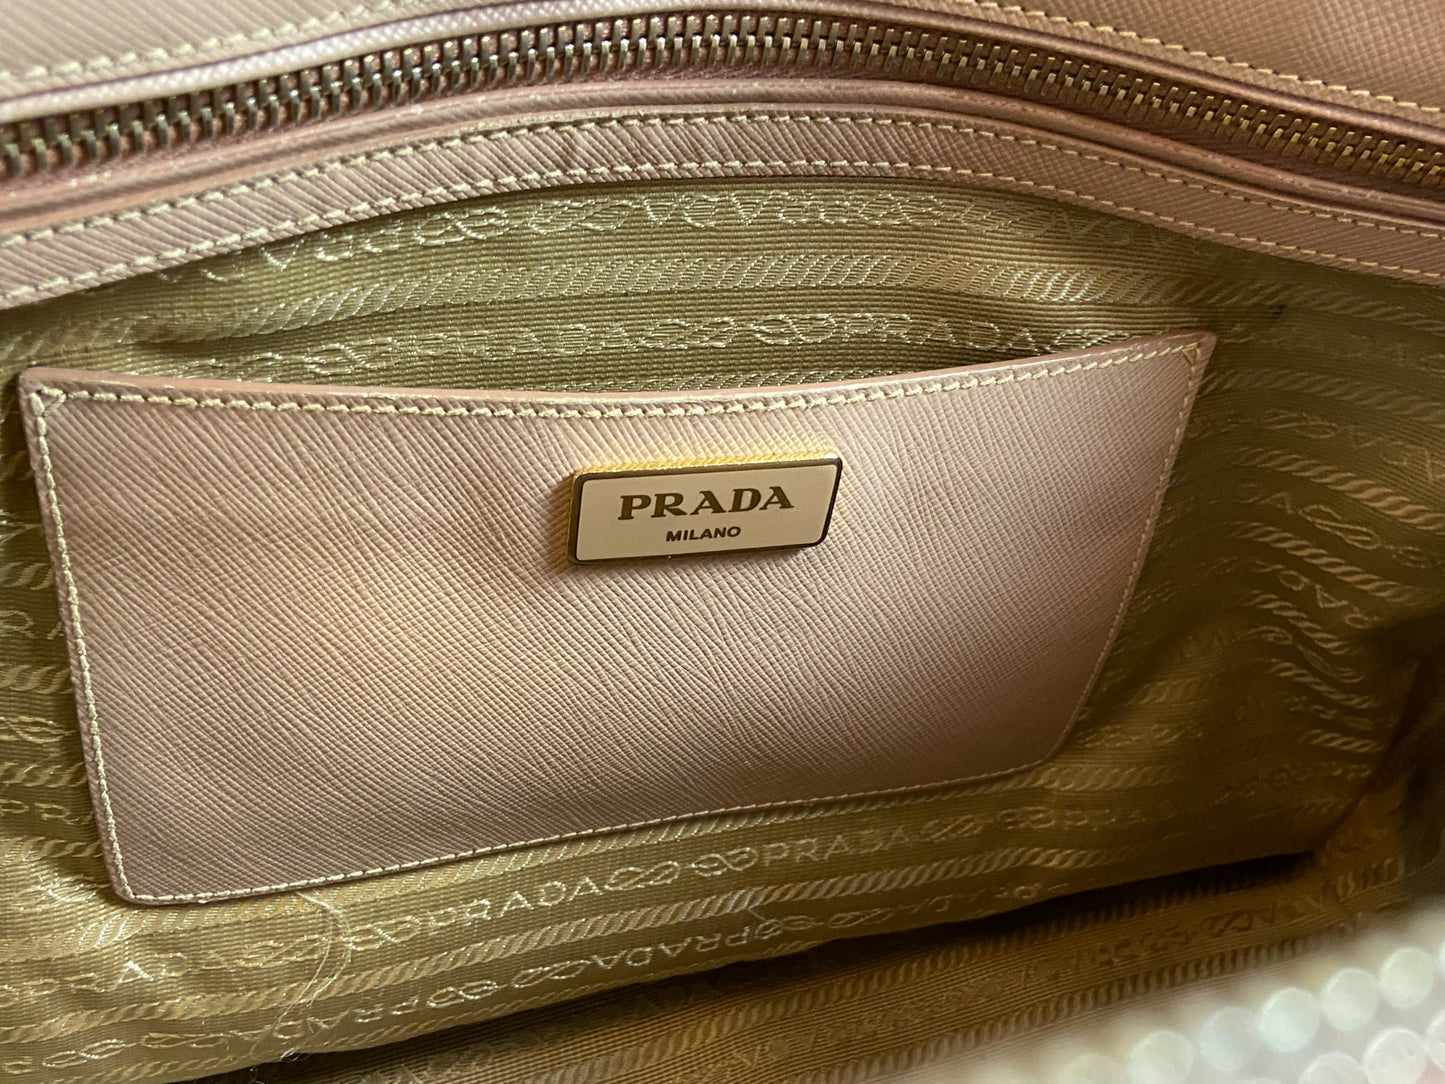 Prada Galleria Hand Bag Rose Saffiano Leather